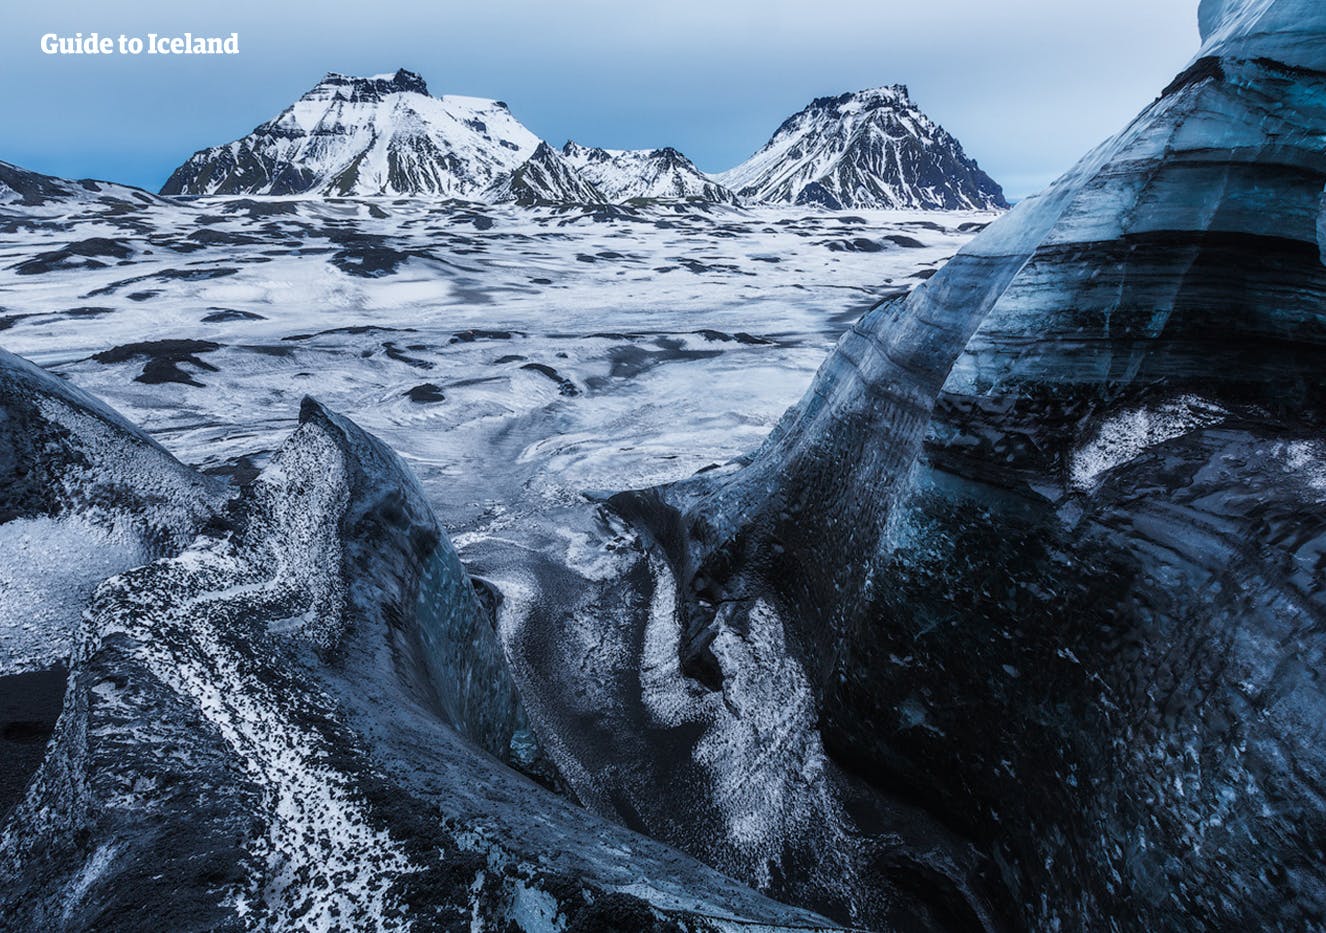 Los picos glaciares de Mýrdalsgjökull están cubiertos de ceniza negra de las erupciones volcánicas pasadas.